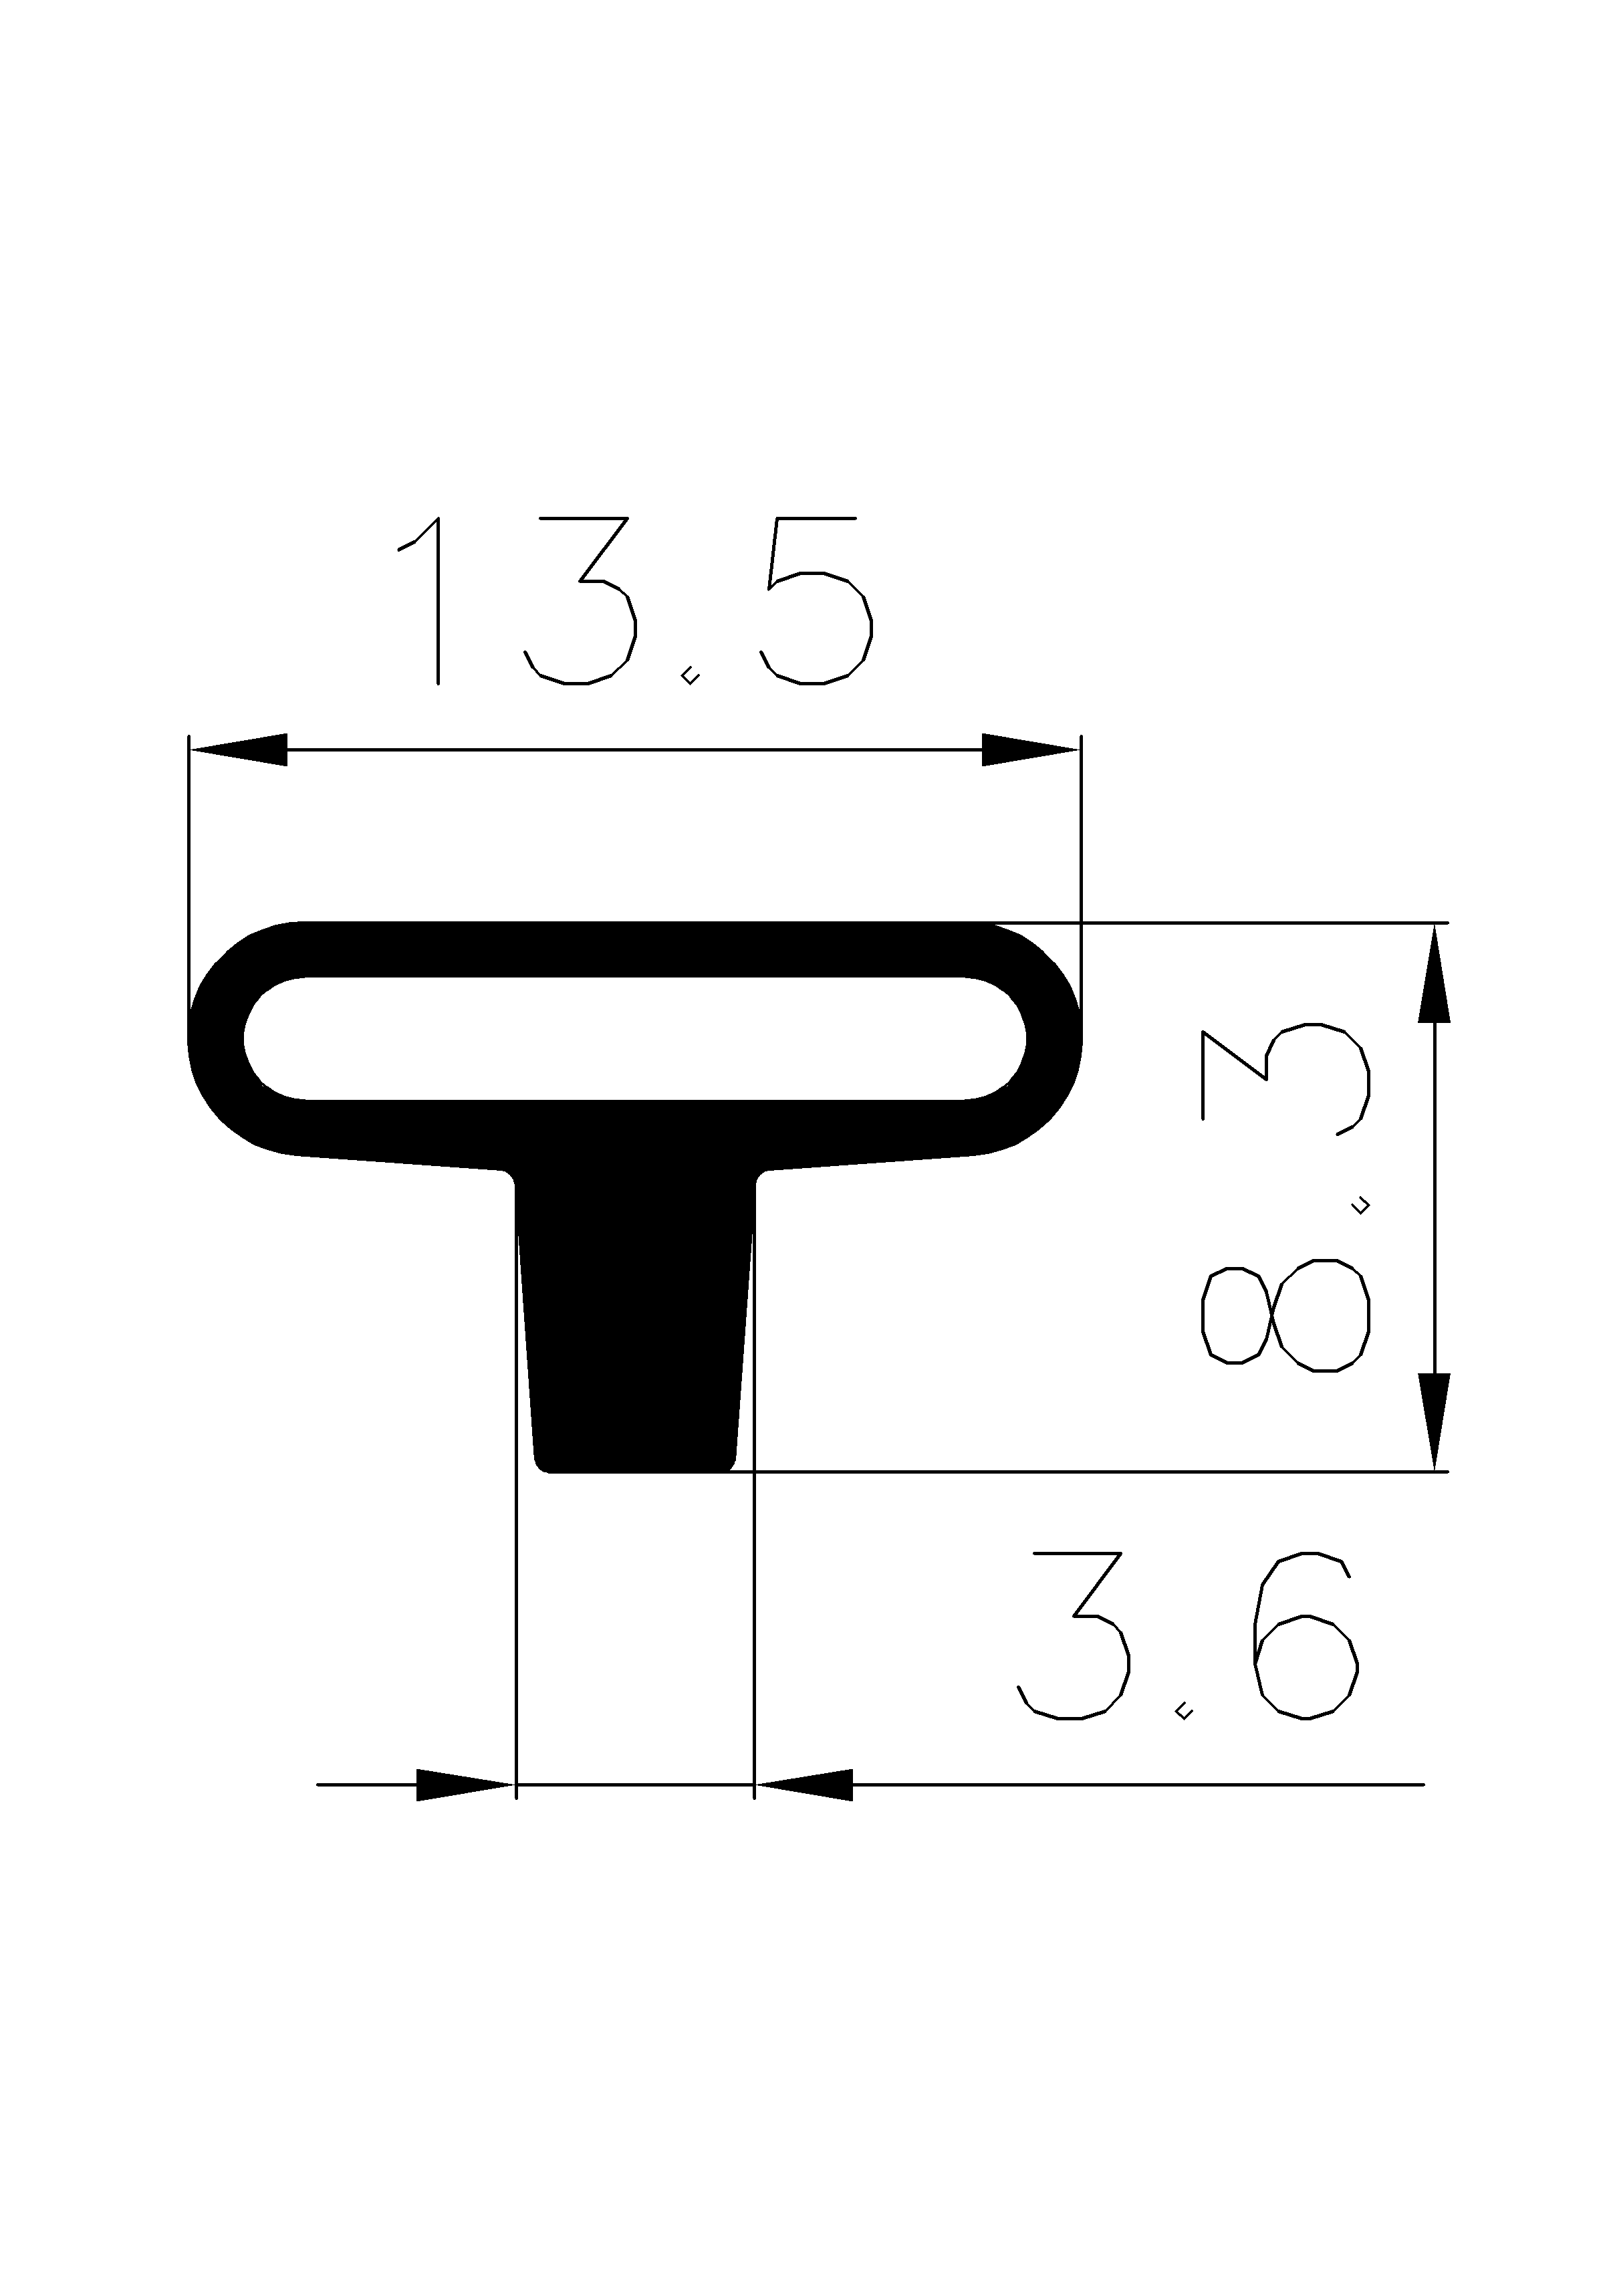 12560160KG - Silikongummi-Profile - Türscheiben- Fensterdichtungsprofile